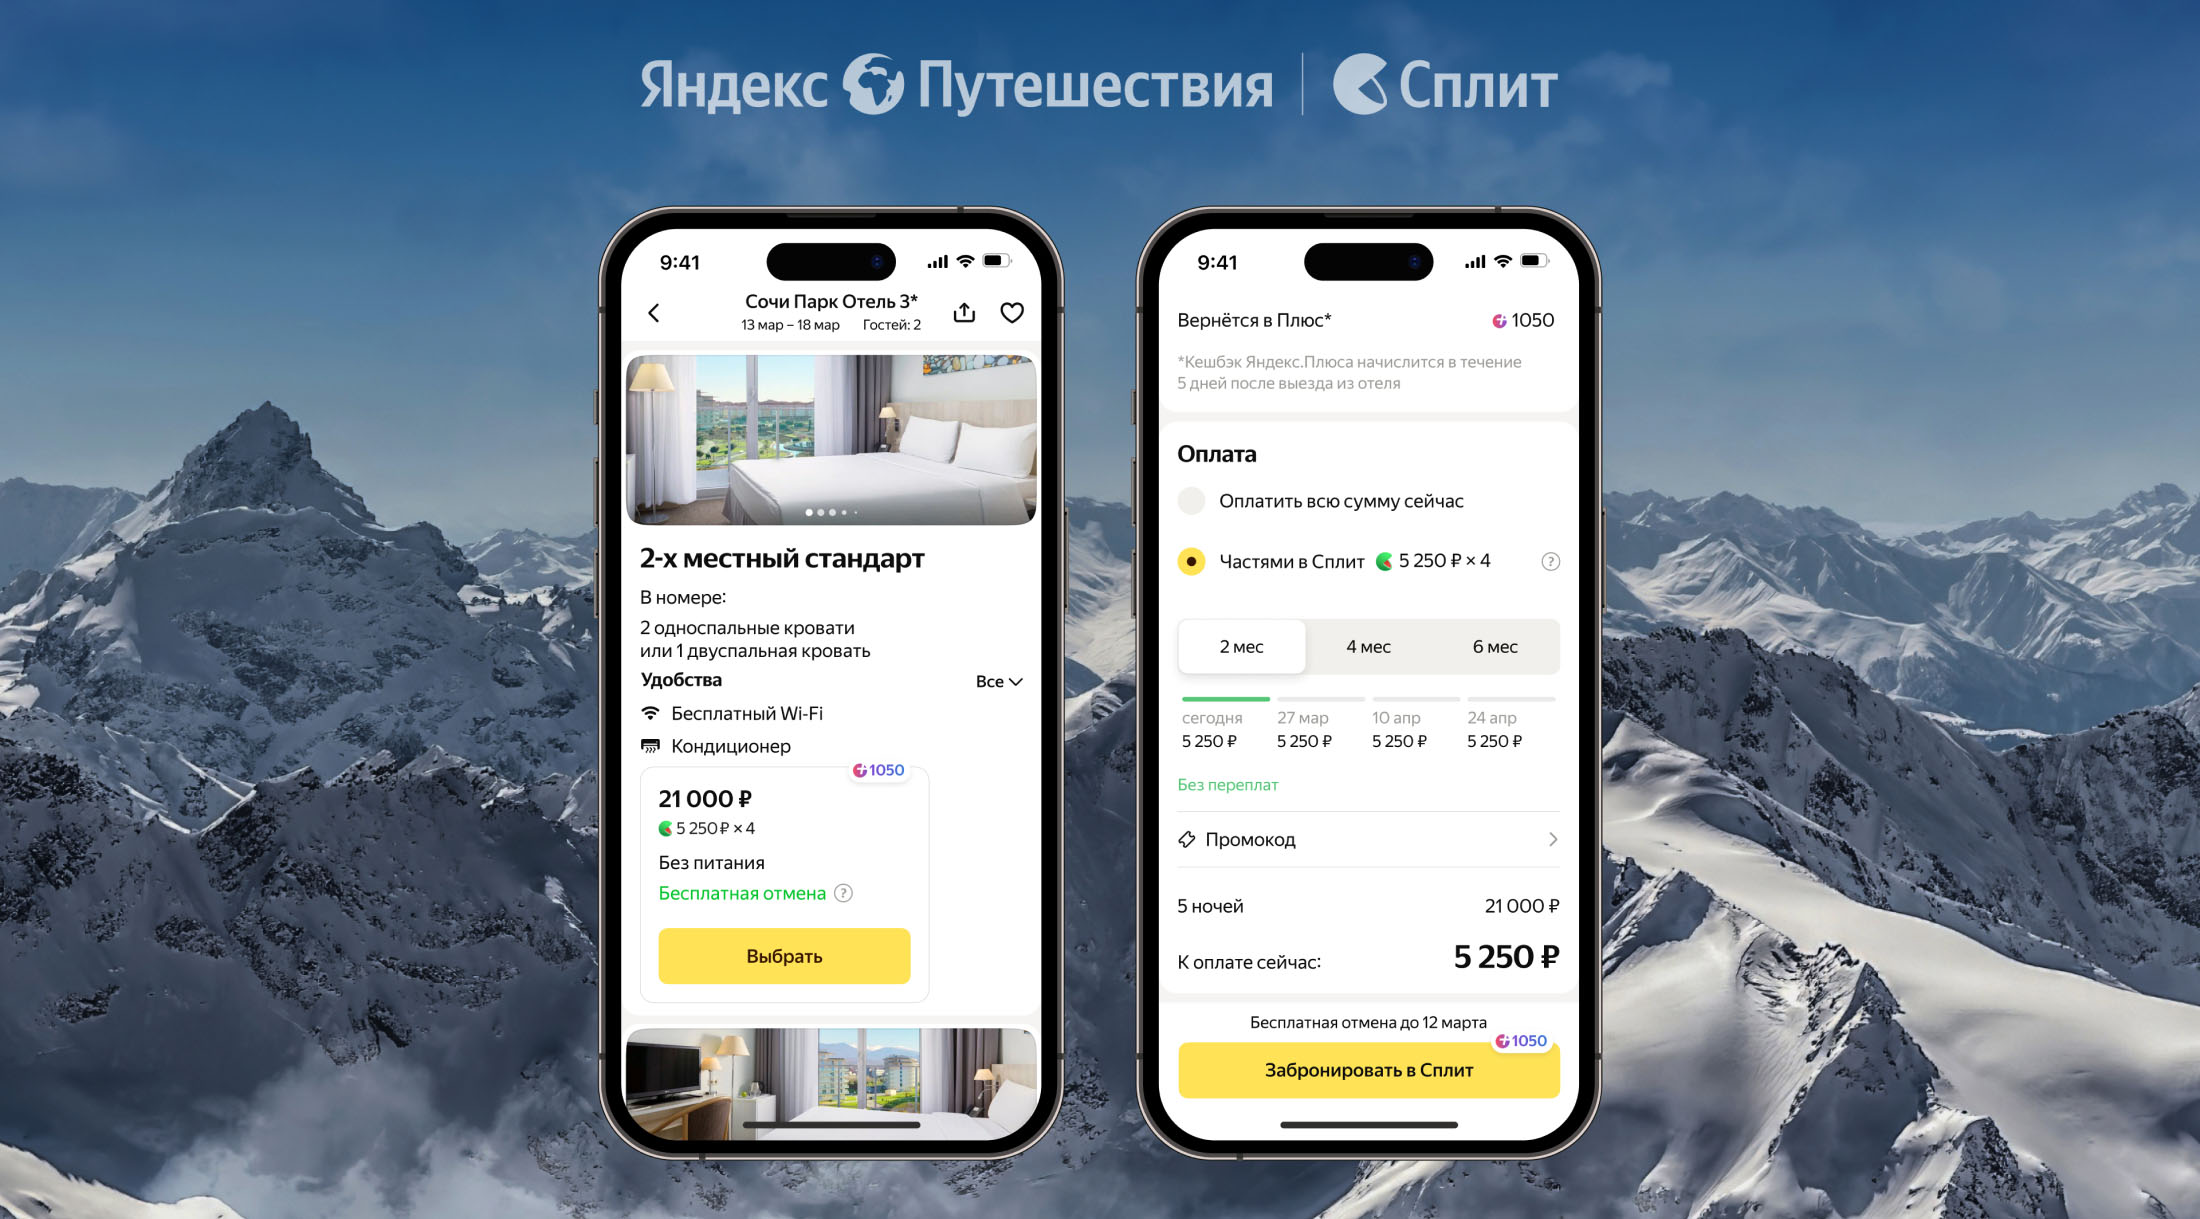 Отели на Яндекс Путешествиях теперь можно оплатить частями